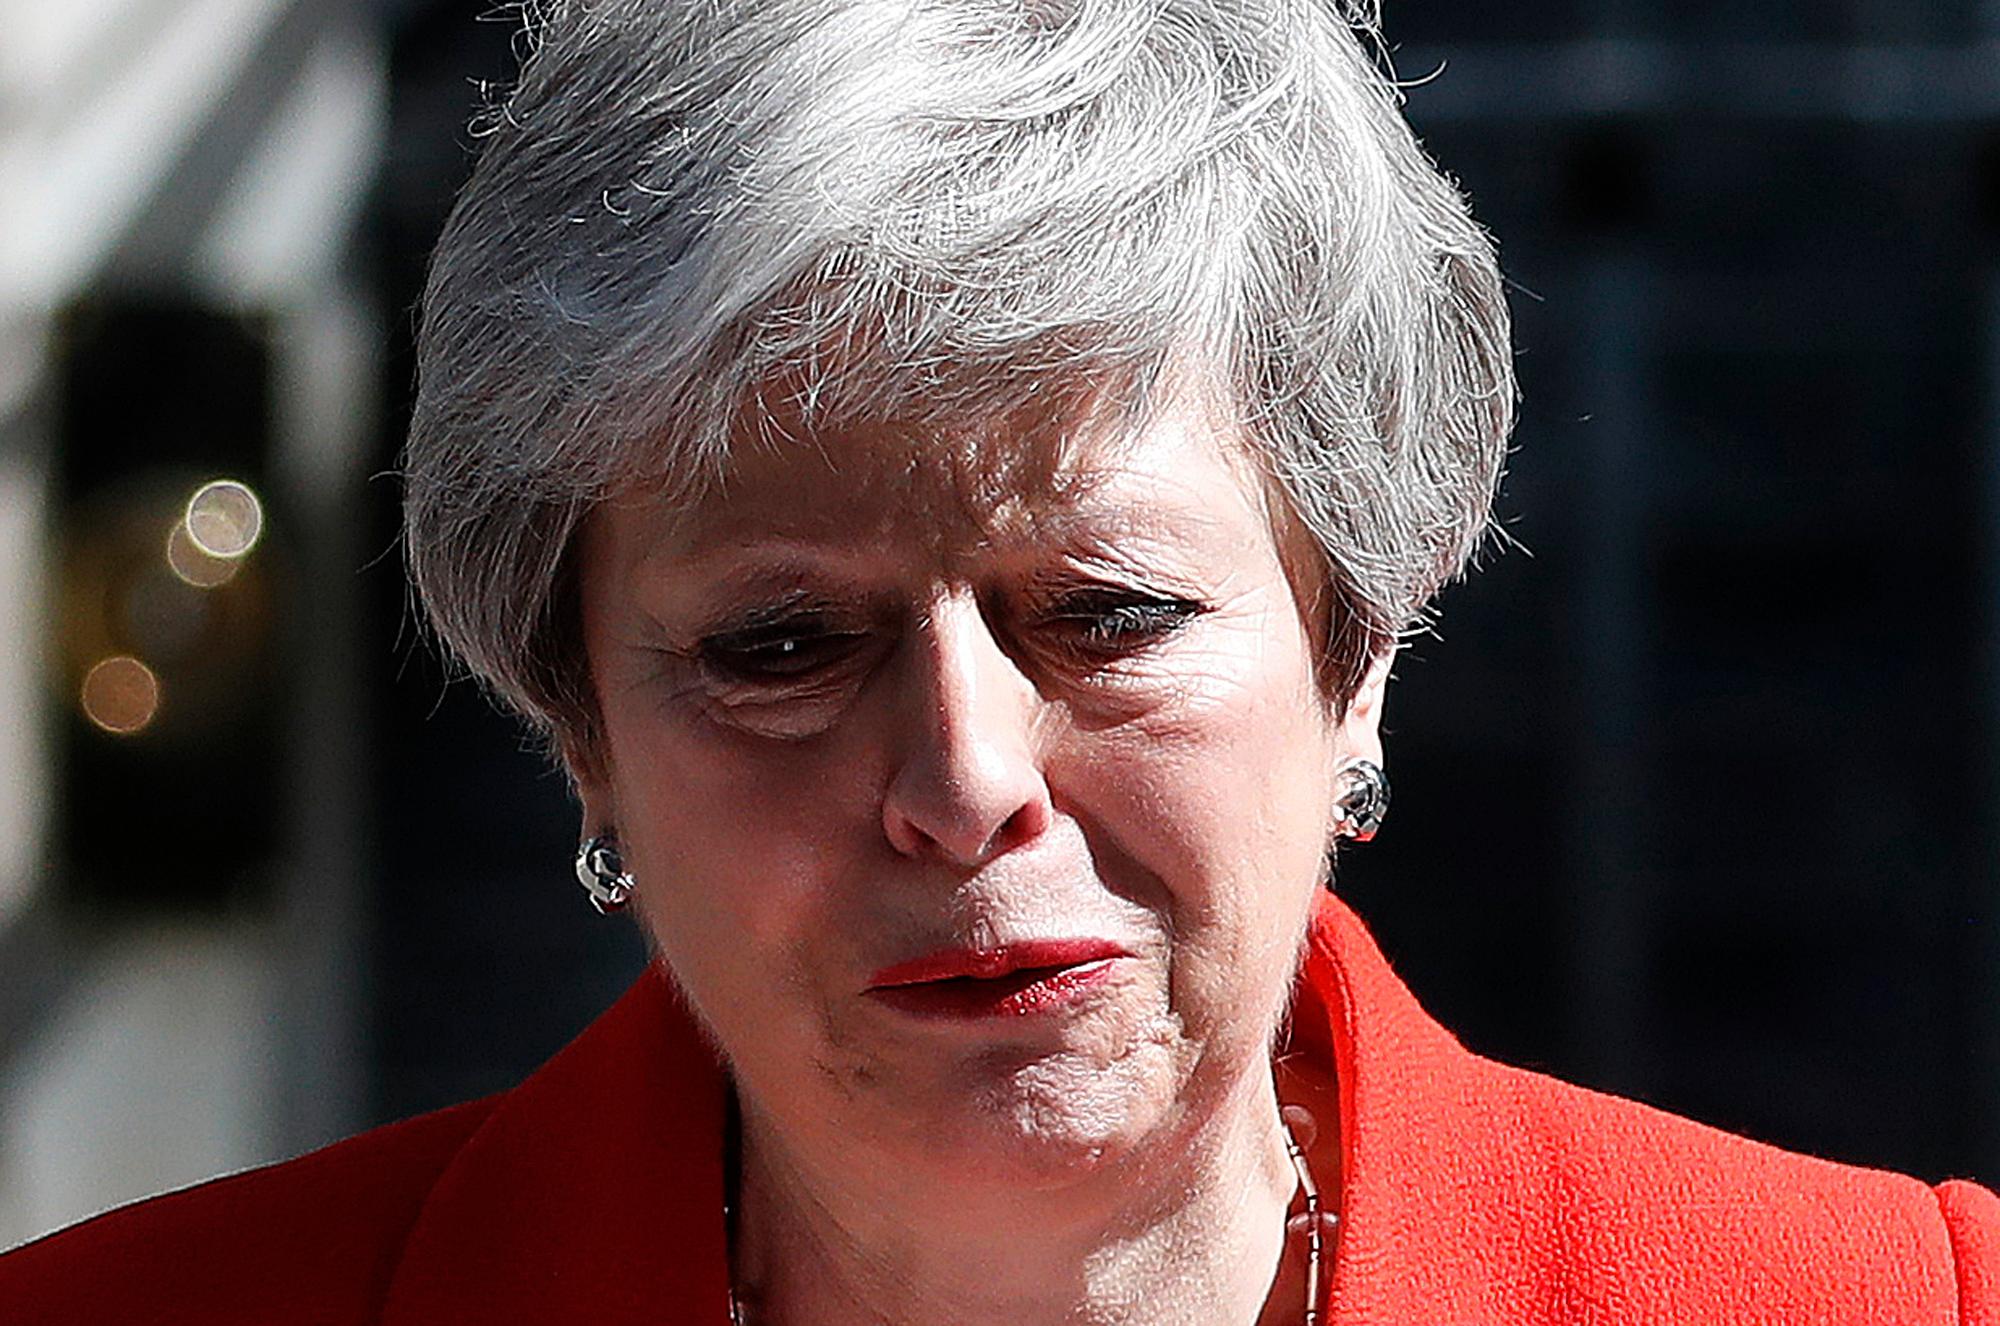 Statsminister Theresa May har måttet tåle svært mye kritikk og hadde til slutt ikke noe annet valg enn å gå av som statsminister. 